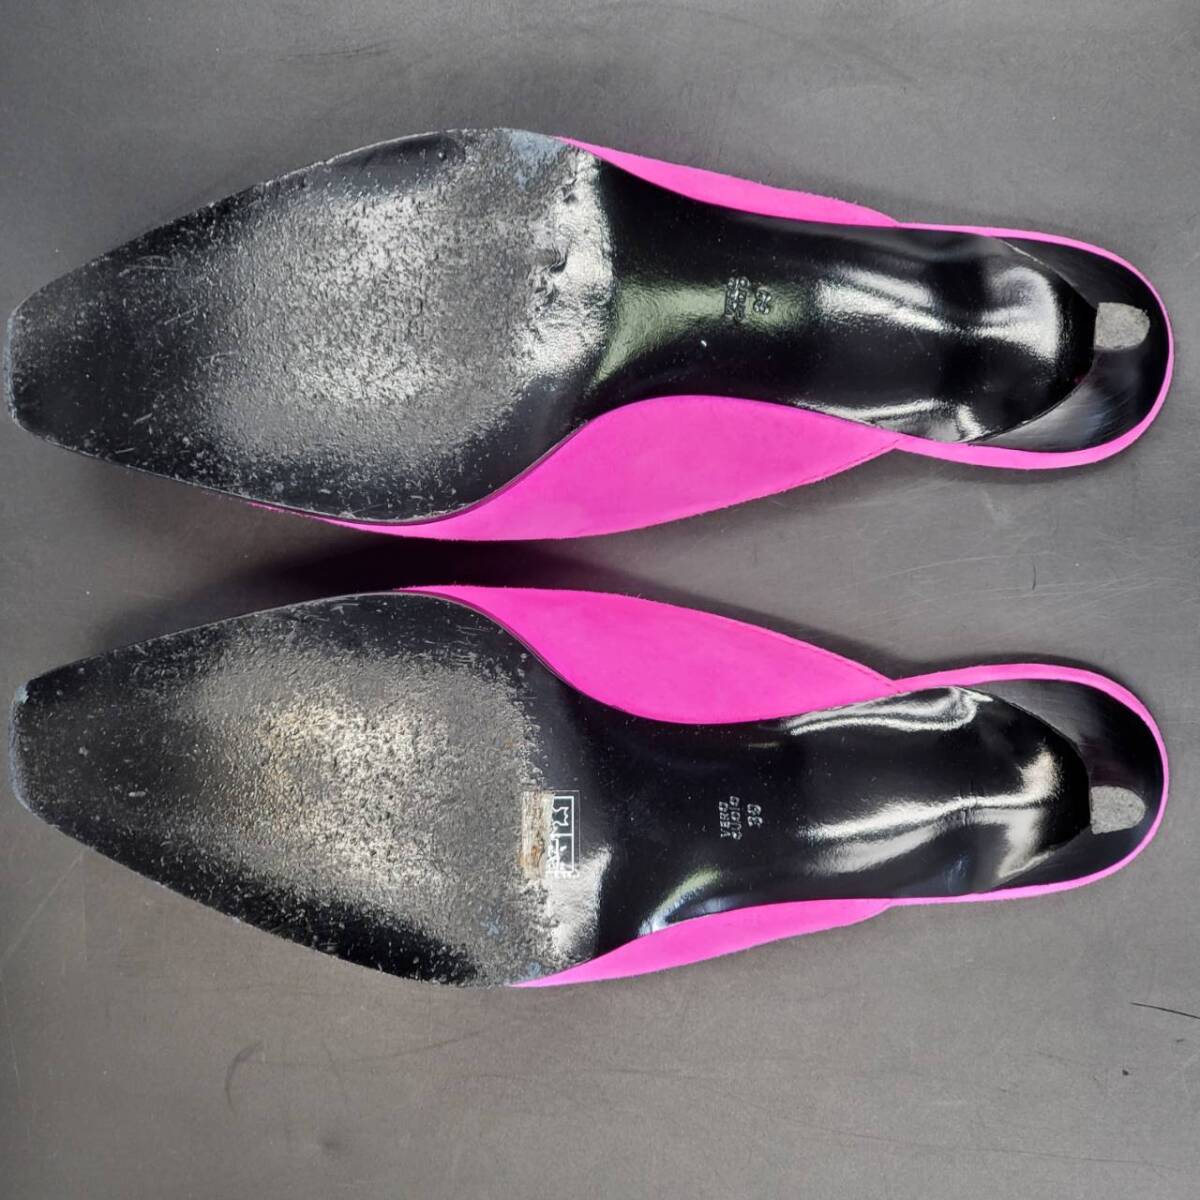 #51 3.1 Phillip Lim フィリップリム フラット ミュール サイズ 39 ピンク PINK サンダル パンプス 本革 靴 アパレル レディース_画像8